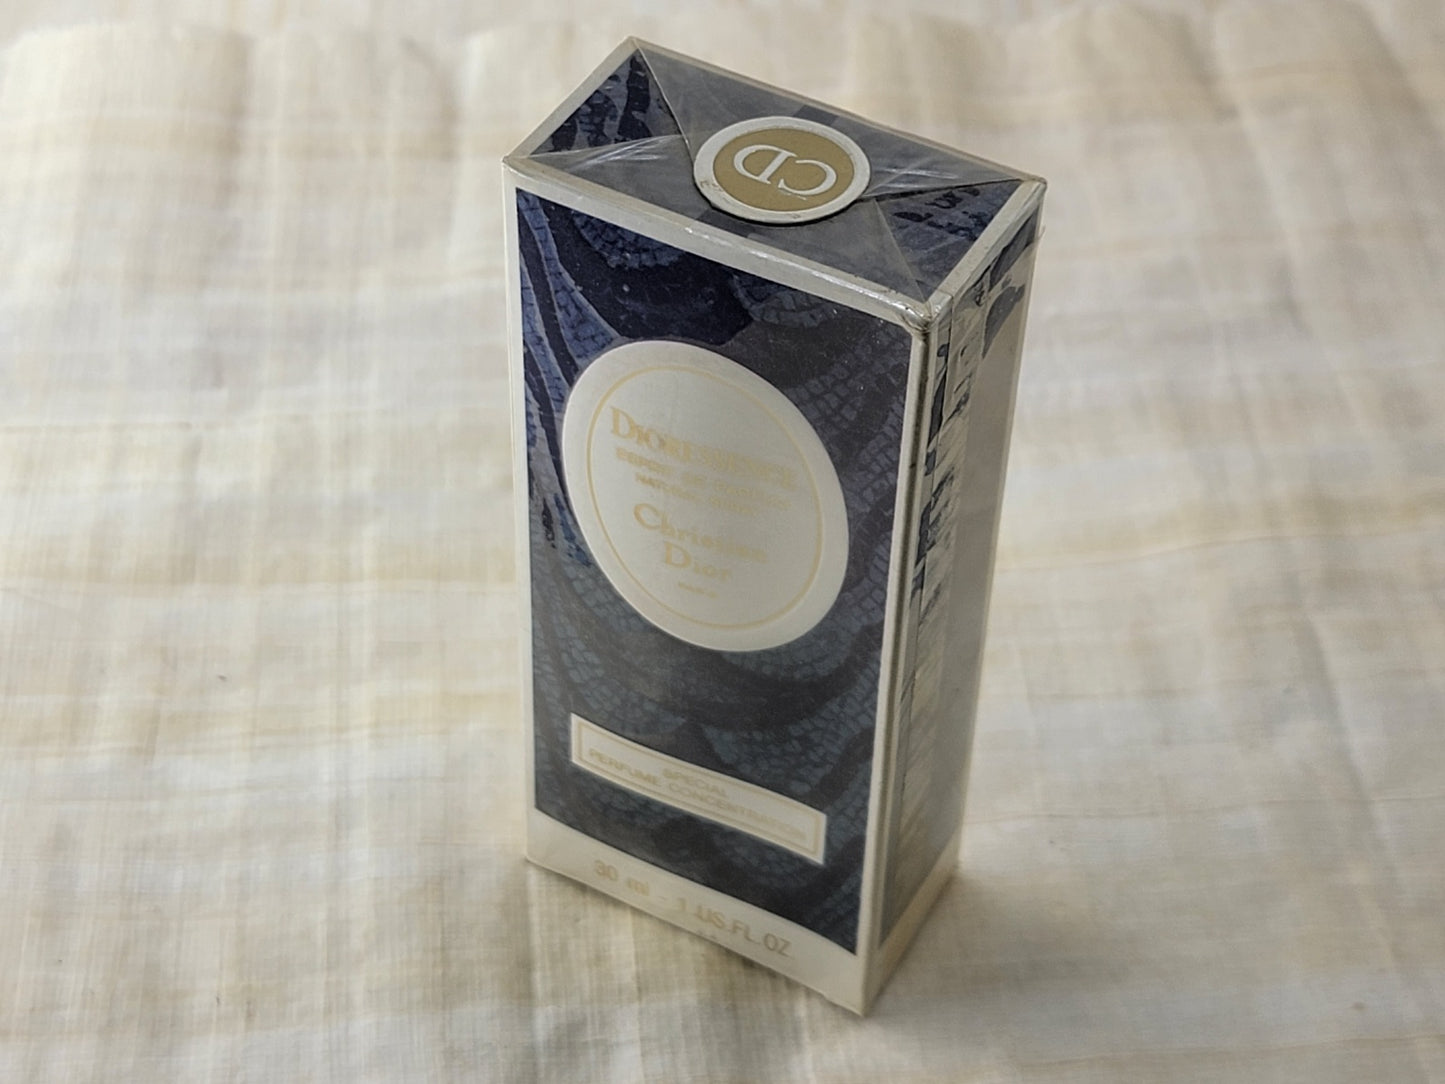 Dioressence Christian Dior Paris Esprit de Parfum Spray 1979, 30 ml 1 oz, Vintage, Rare, Sealed